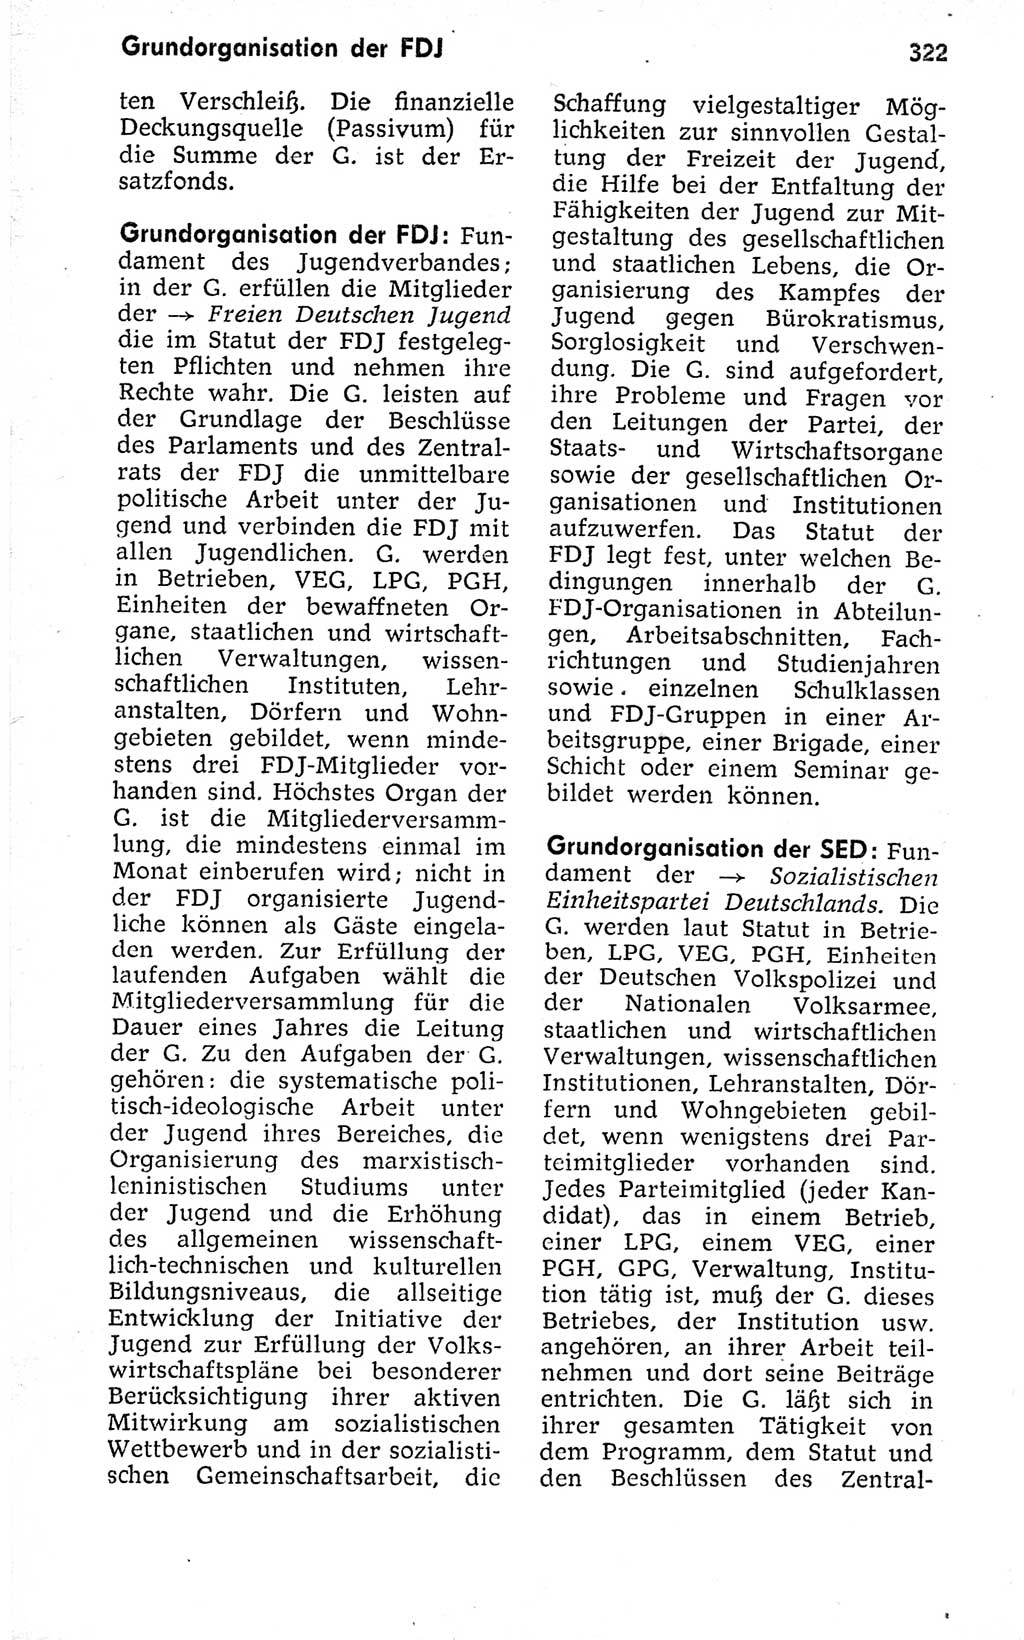 Kleines politisches Wörterbuch [Deutsche Demokratische Republik (DDR)] 1973, Seite 322 (Kl. pol. Wb. DDR 1973, S. 322)